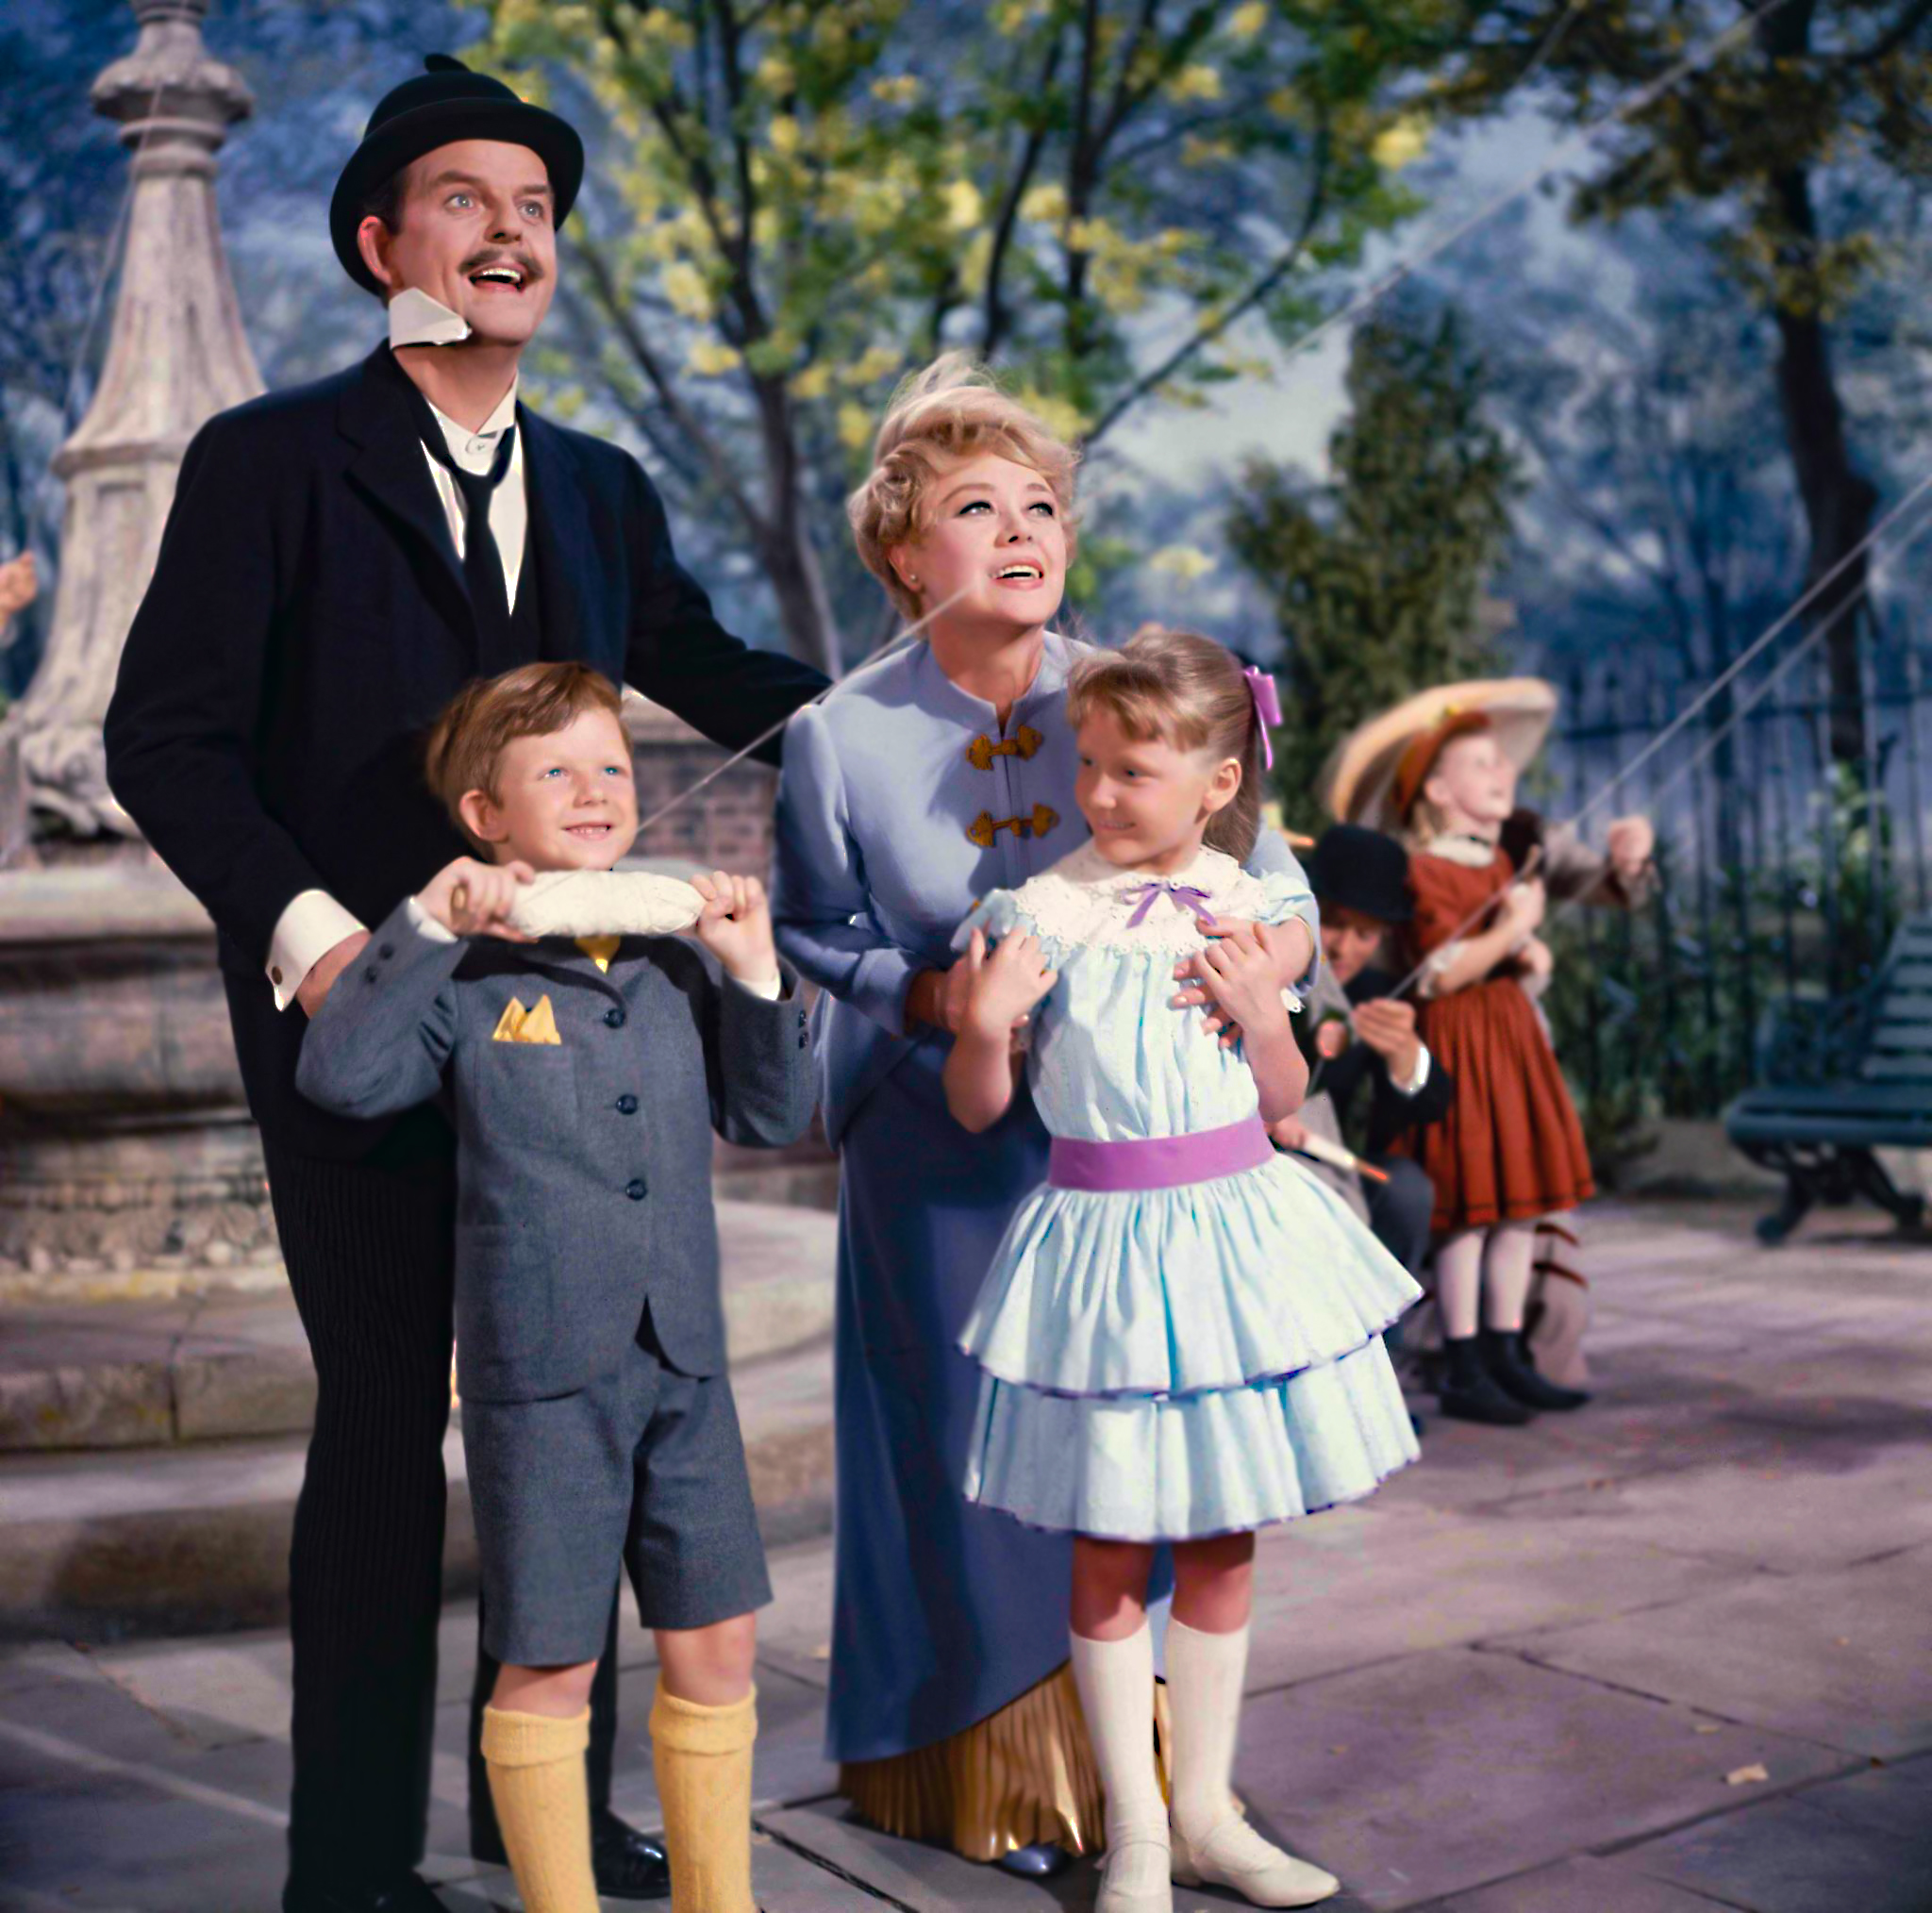 La famiia de la pel�cula 'Mary Poppins' en una de las escenas finales.